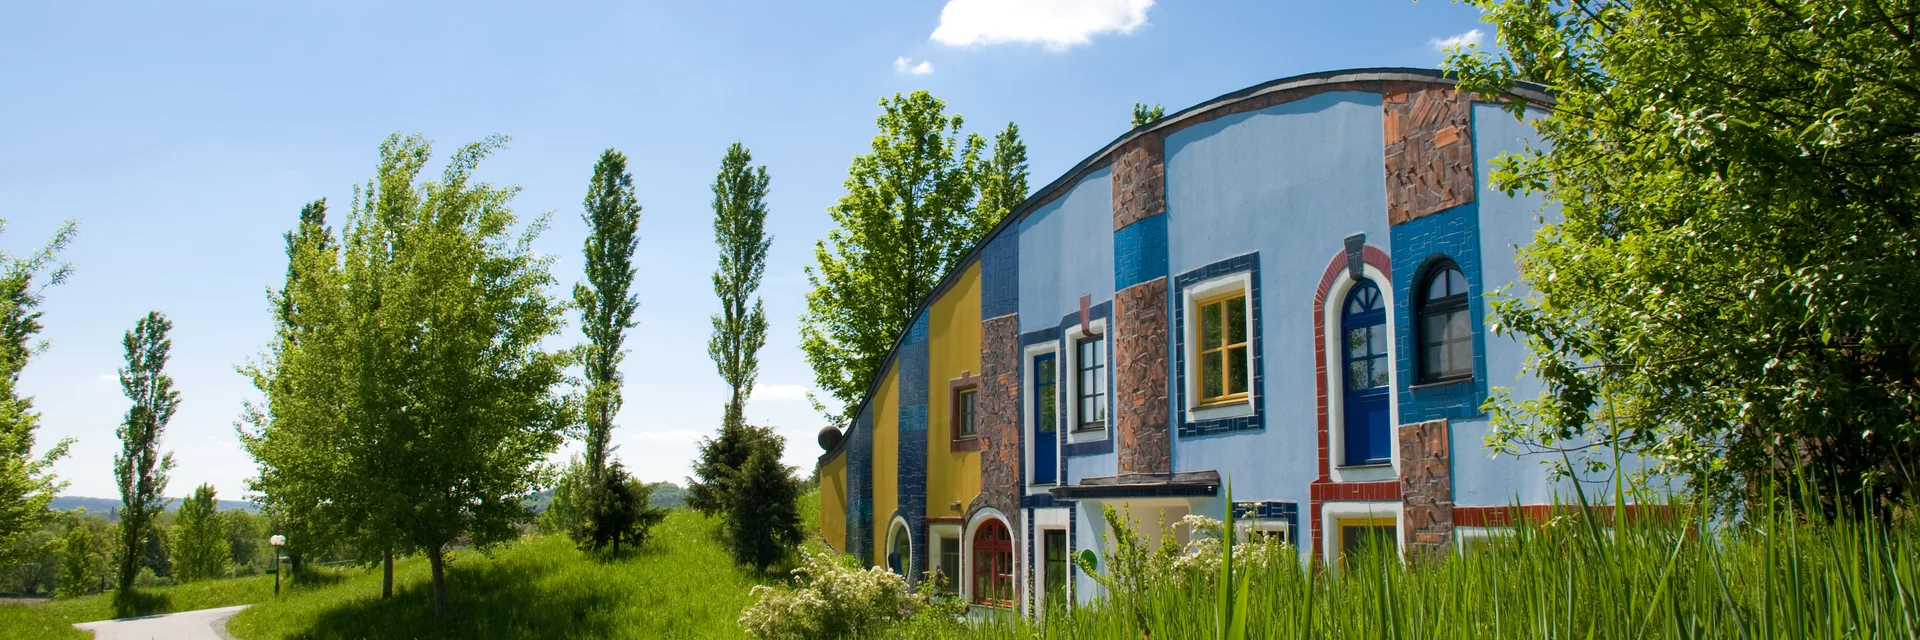 Rogner Bad Blumau | © Rogner Bad Blumau, Hundertwasser Architekturprojekt | Hundertwasser Architekturprojekt